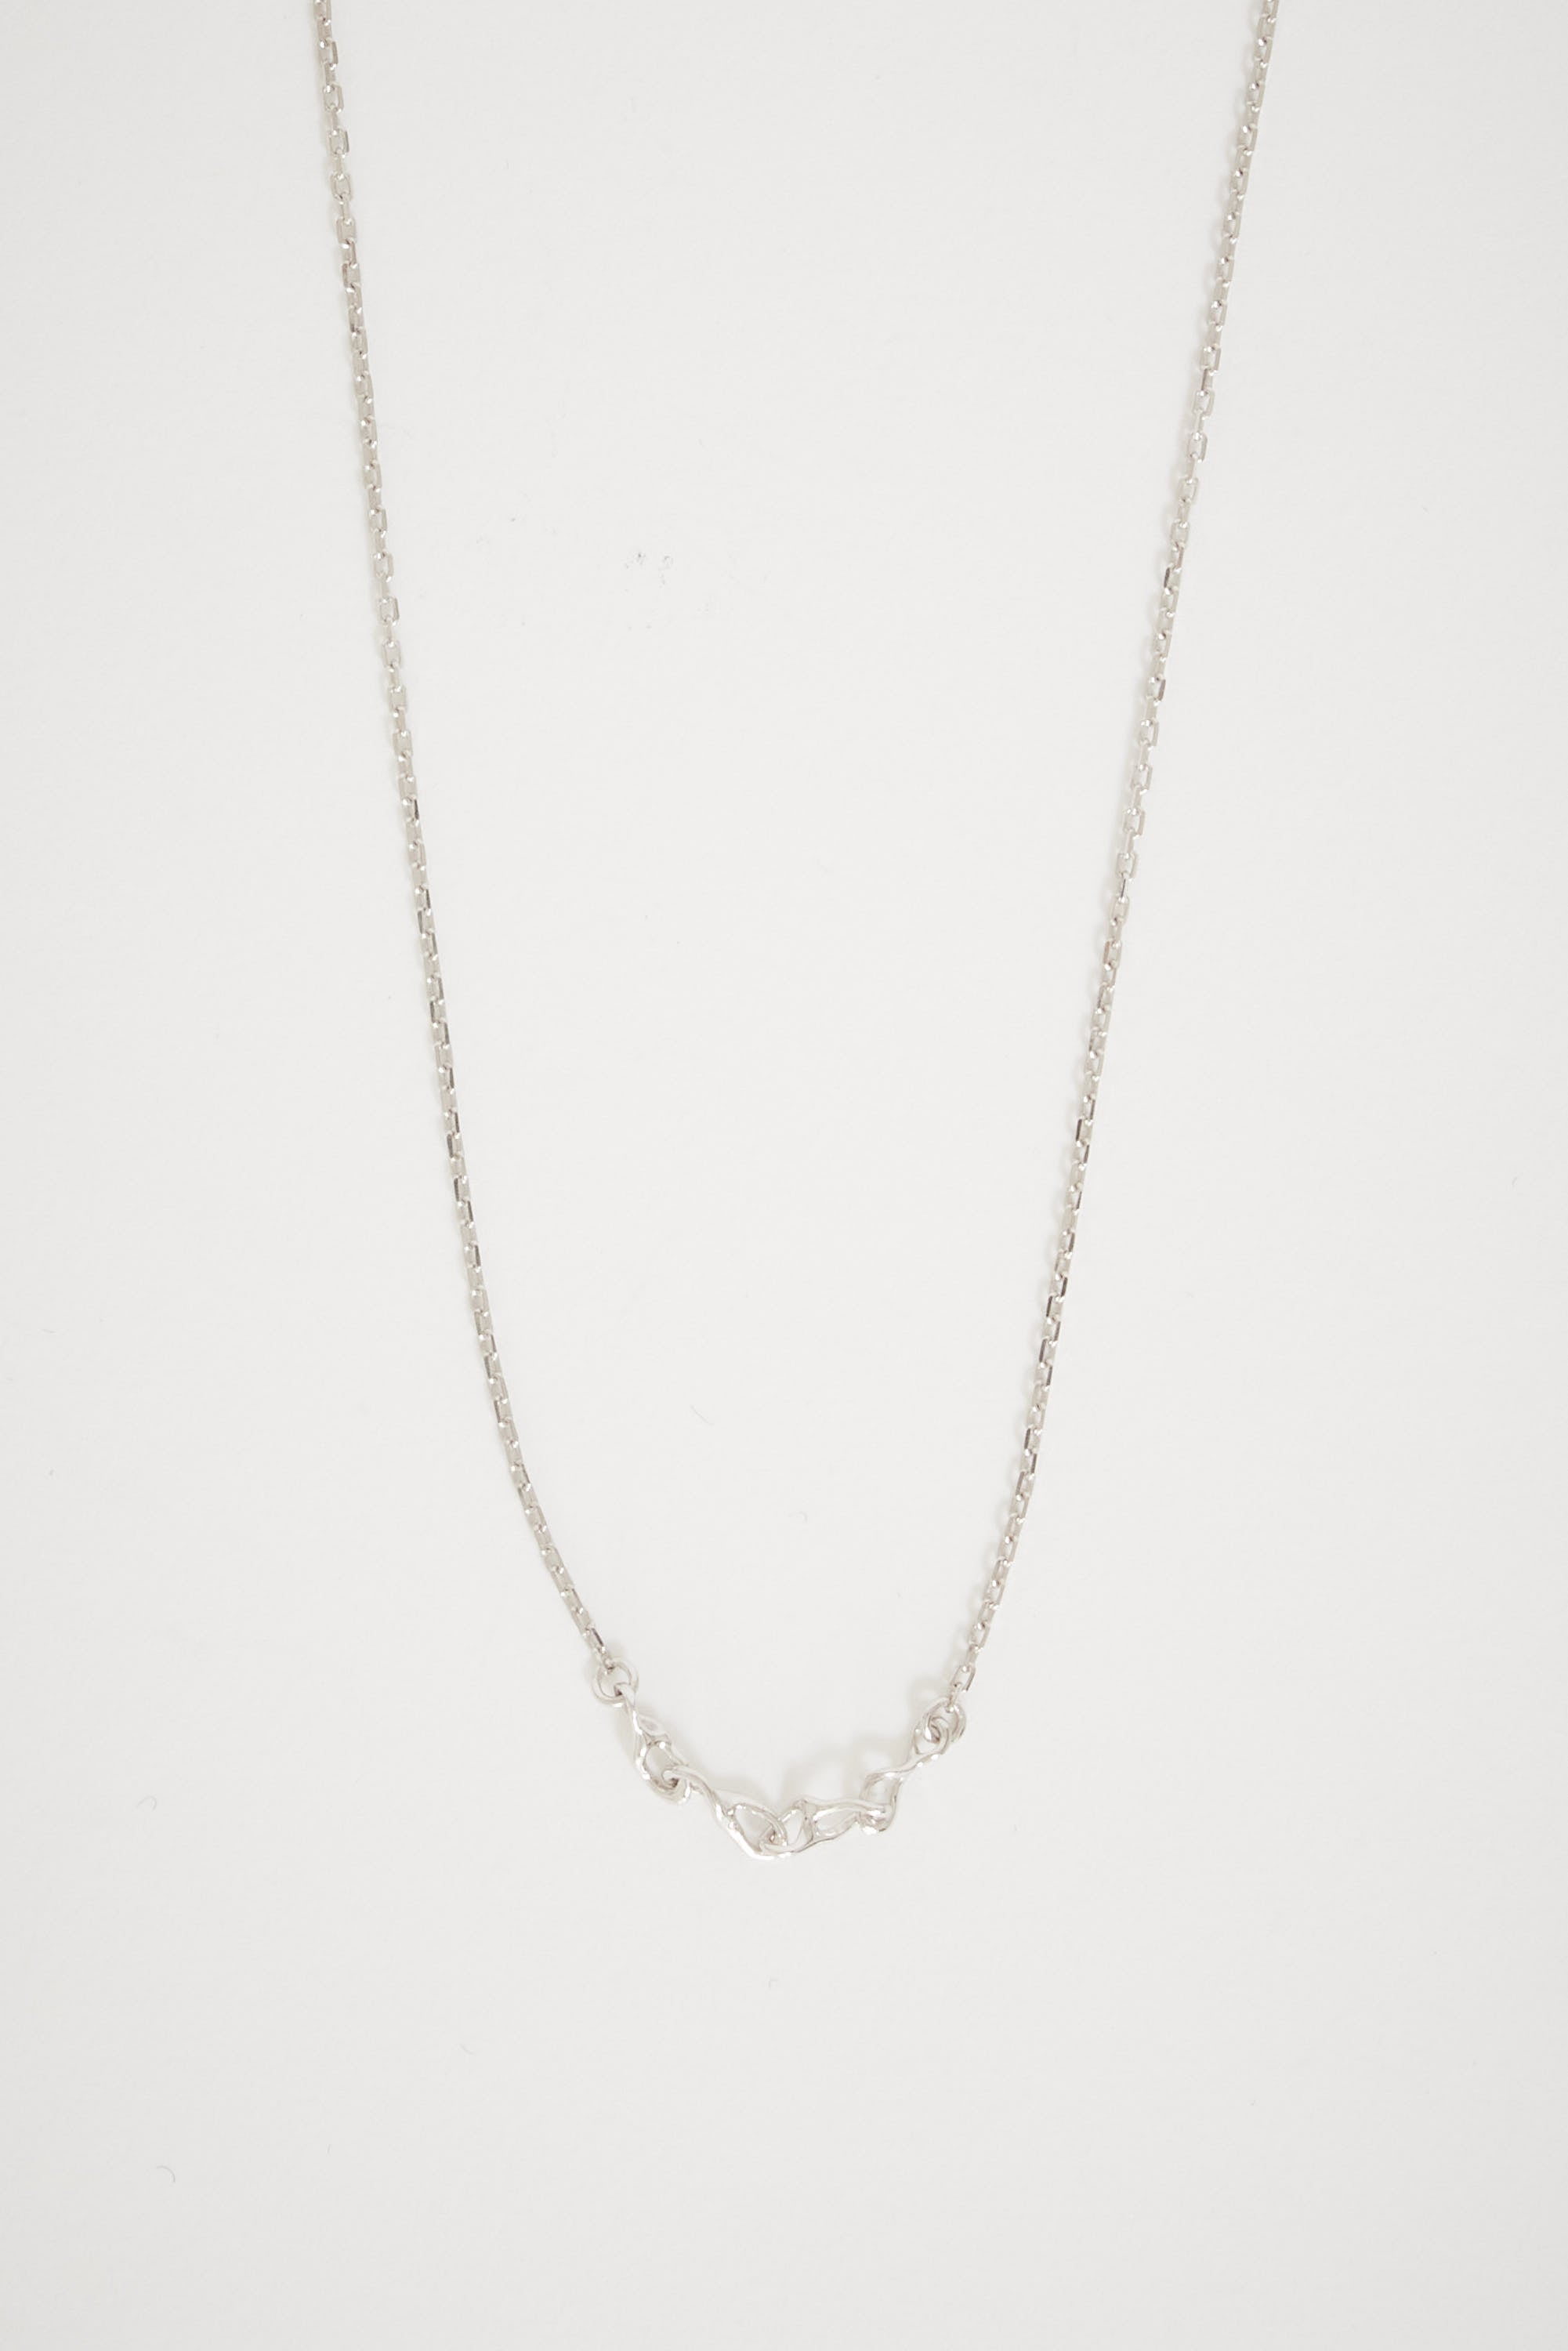 Maria Black Caria Necklace Silver | Maplestore